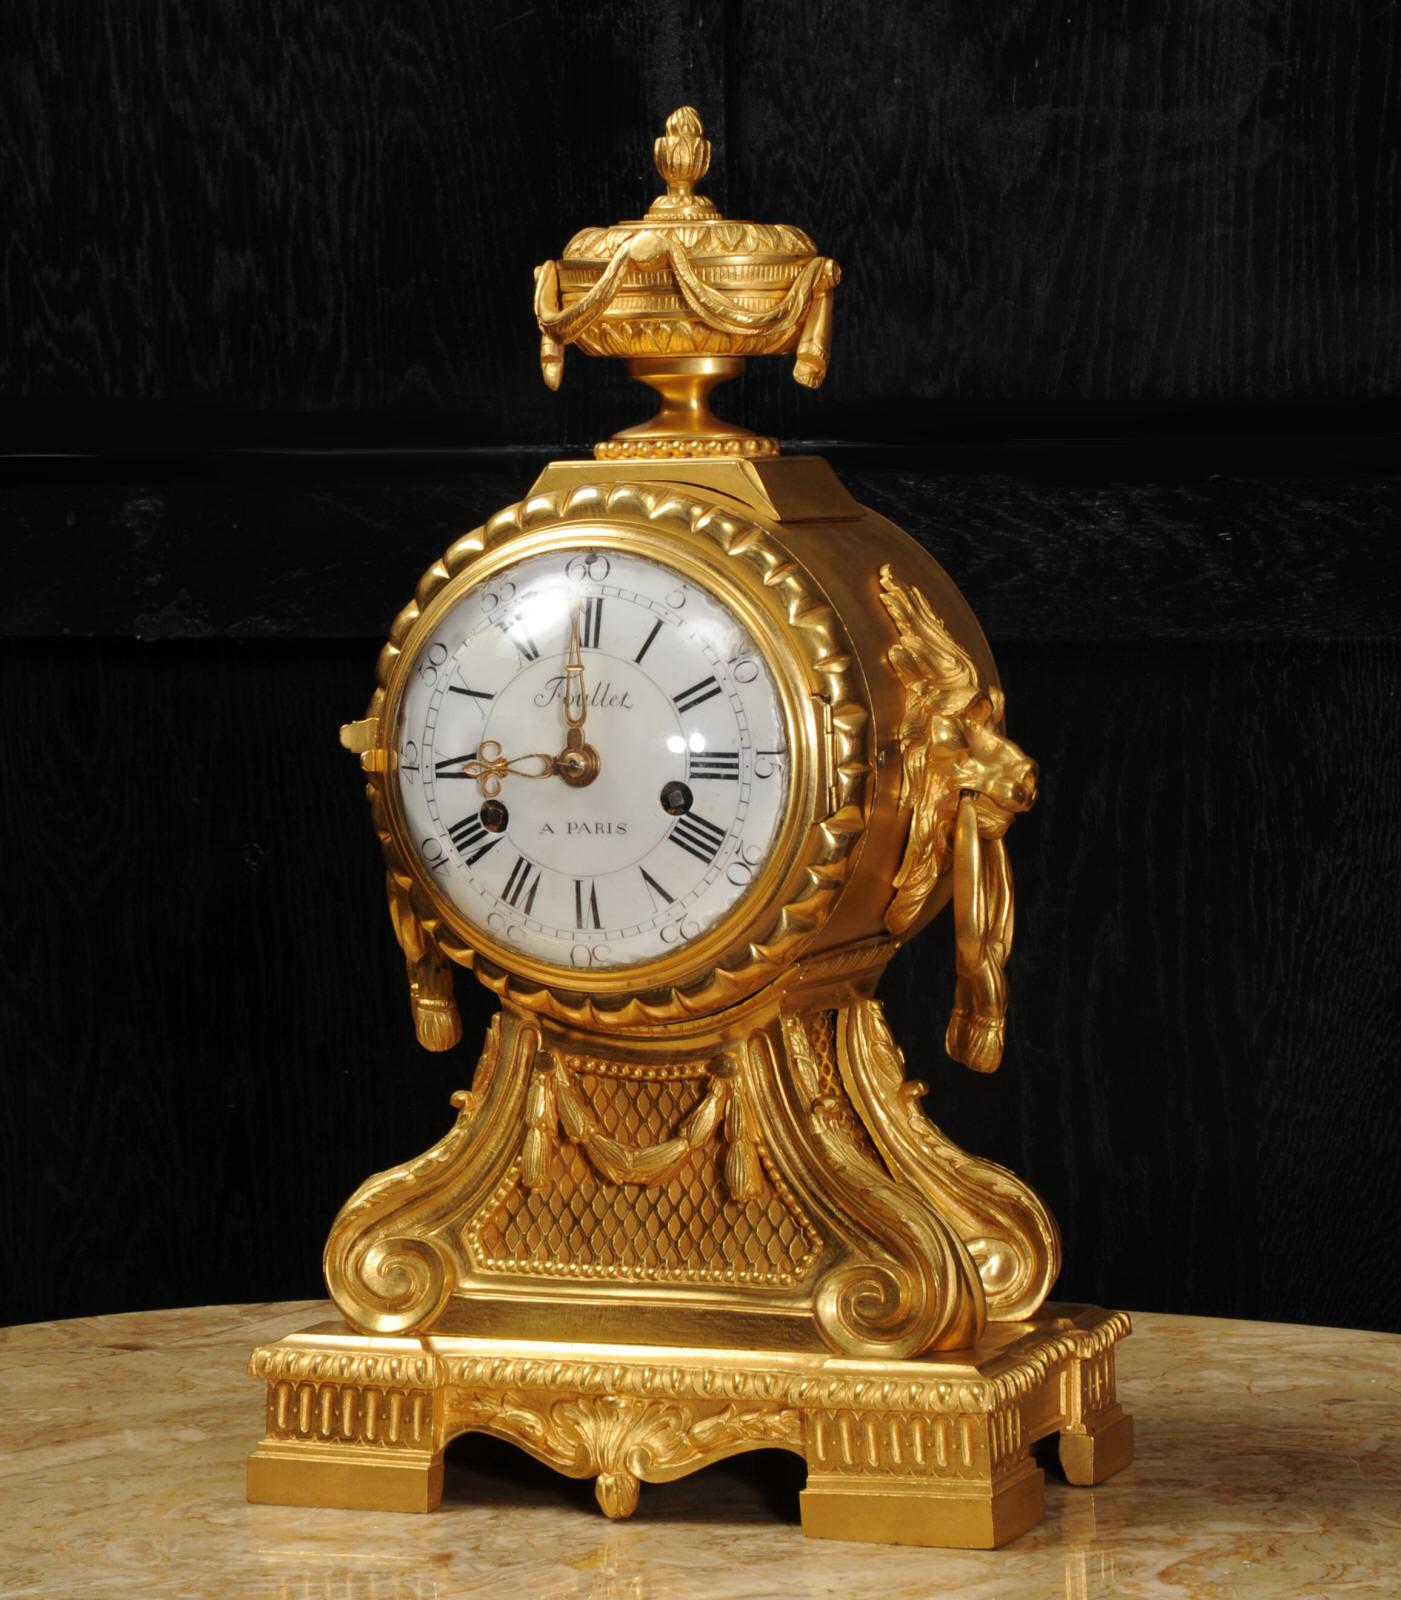 Eine seltene und sehr schöne originale französische Uhr aus der Zeit Ludwigs XVI., um 1770, mit einem Gehäuse des renommierten Herstellers Antoine Foullet. Wunderschön gefertigt aus prächtiger, feuervergoldeter Quecksilberbronze und mit der